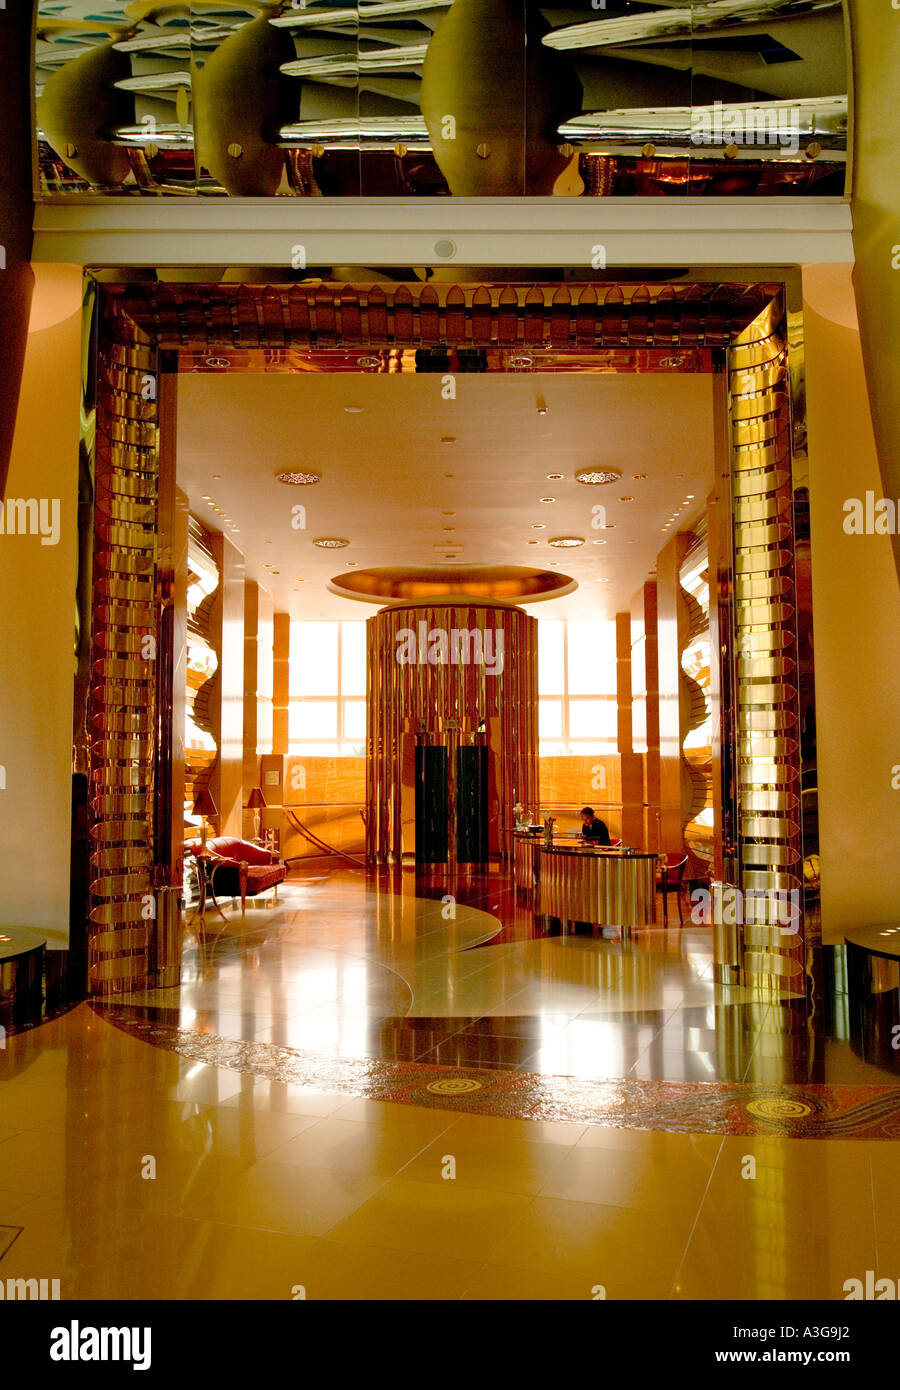 Hotel Burj Al-Arab, Dubai, Vereinigte Arabische Emirate - eine Ansicht auf einem Korridor in Richtung einer kleinen ^ Bereich und Aufzug Lobby mit Rezeption Stockfoto